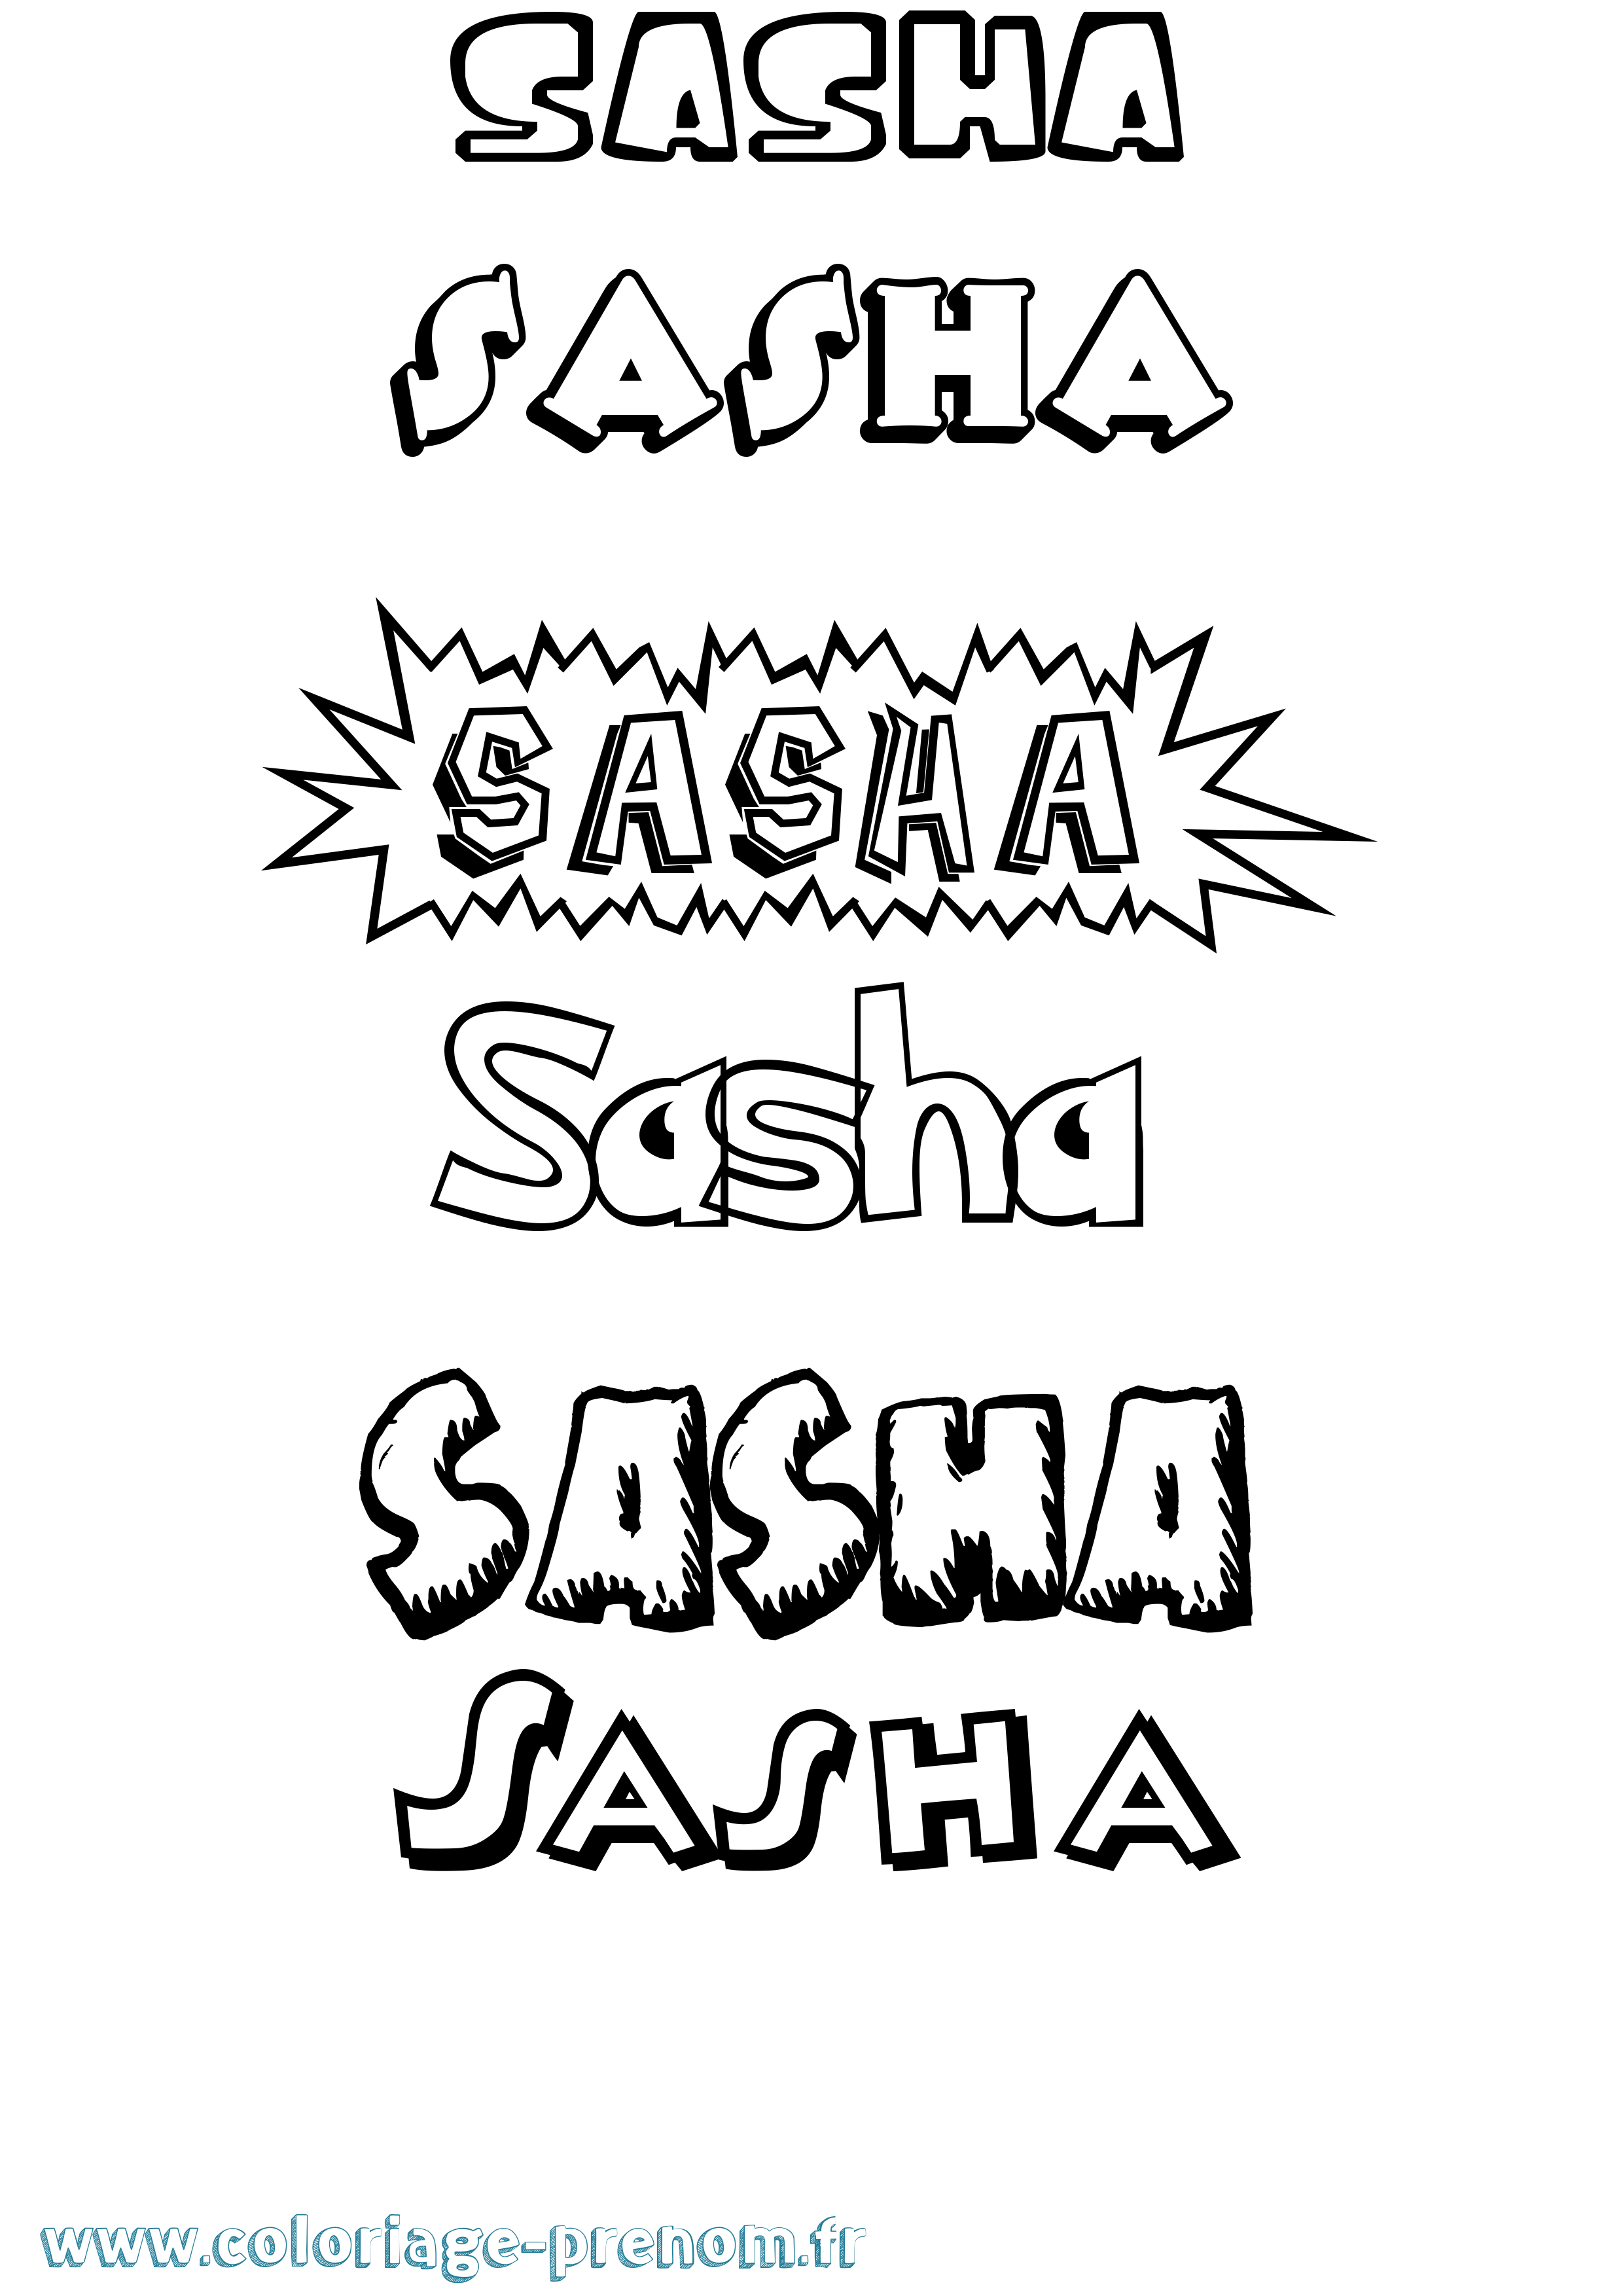 Coloriage prénom Sasha